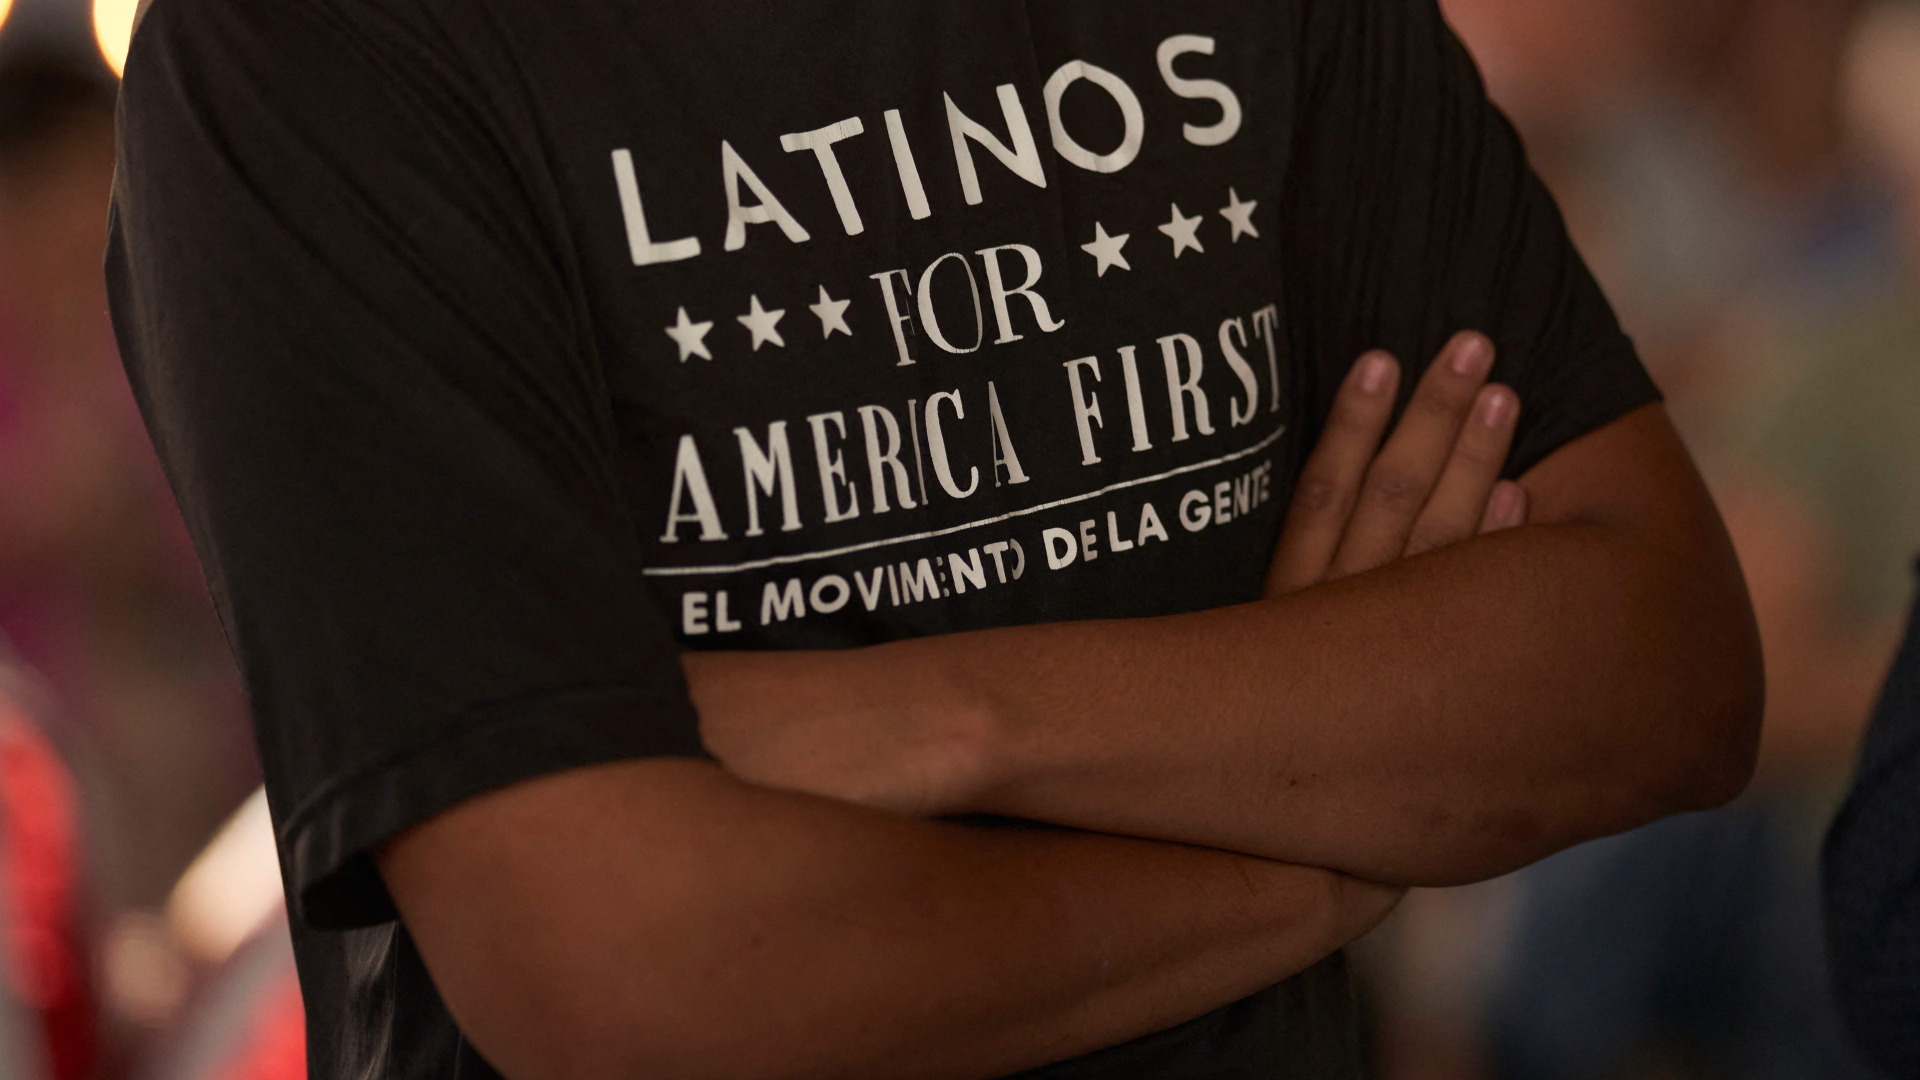 Ein Mann auf einer republikanischen Wahlveranstaltung in Texas (USA) trägt ein T-Shirt mit dem Aufdruck "Latinos for America First"  | AFP